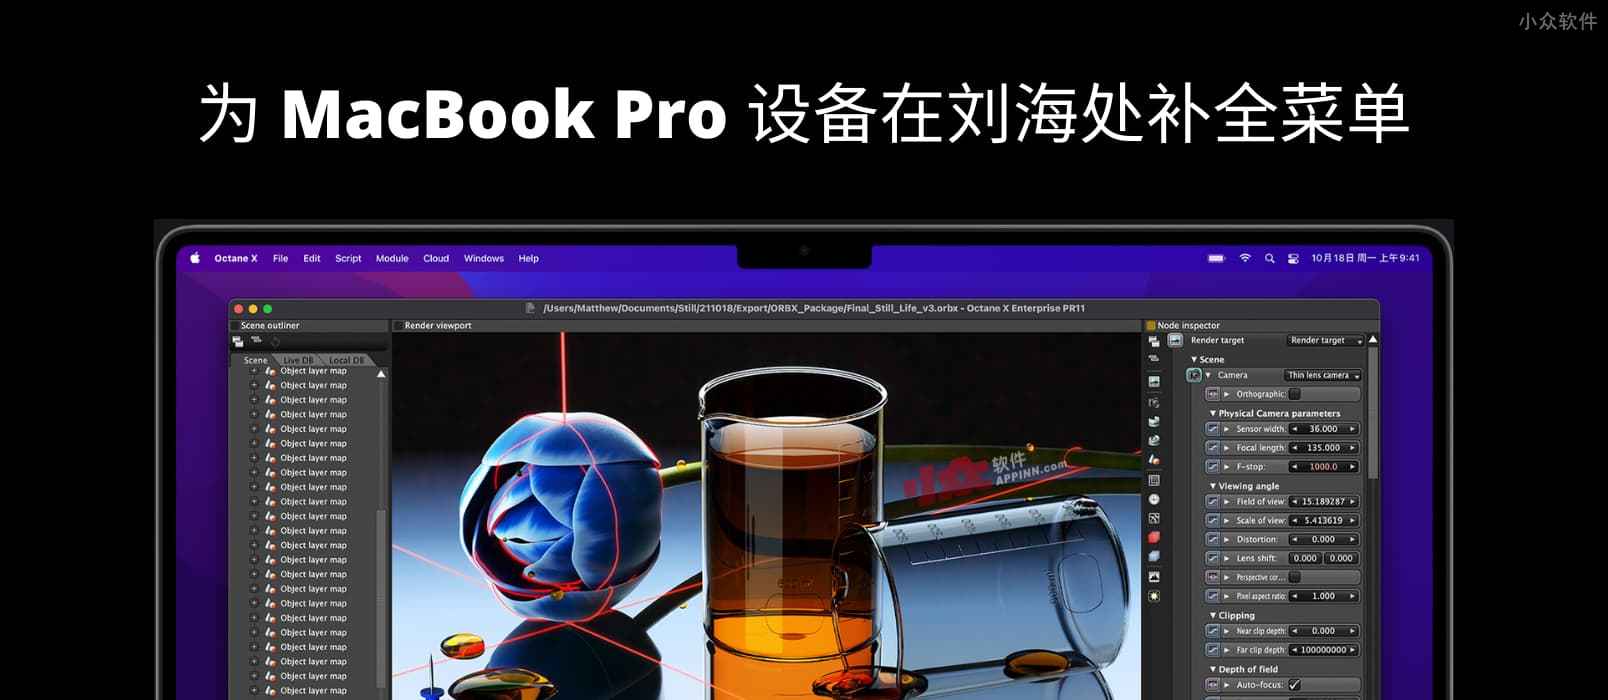 刘海儿补全计划 - 为 MacBook Pro 设备在刘海处补全菜单，一个被苹果拒绝的应用